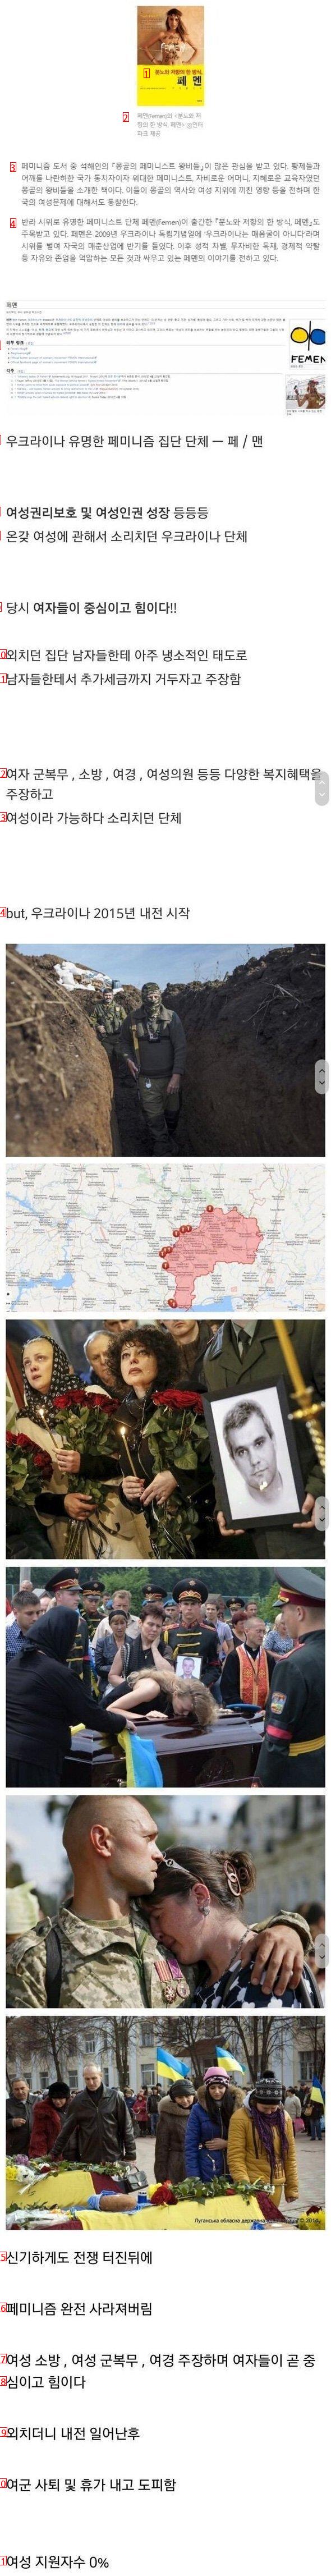 우크라이나 페미들의 근황